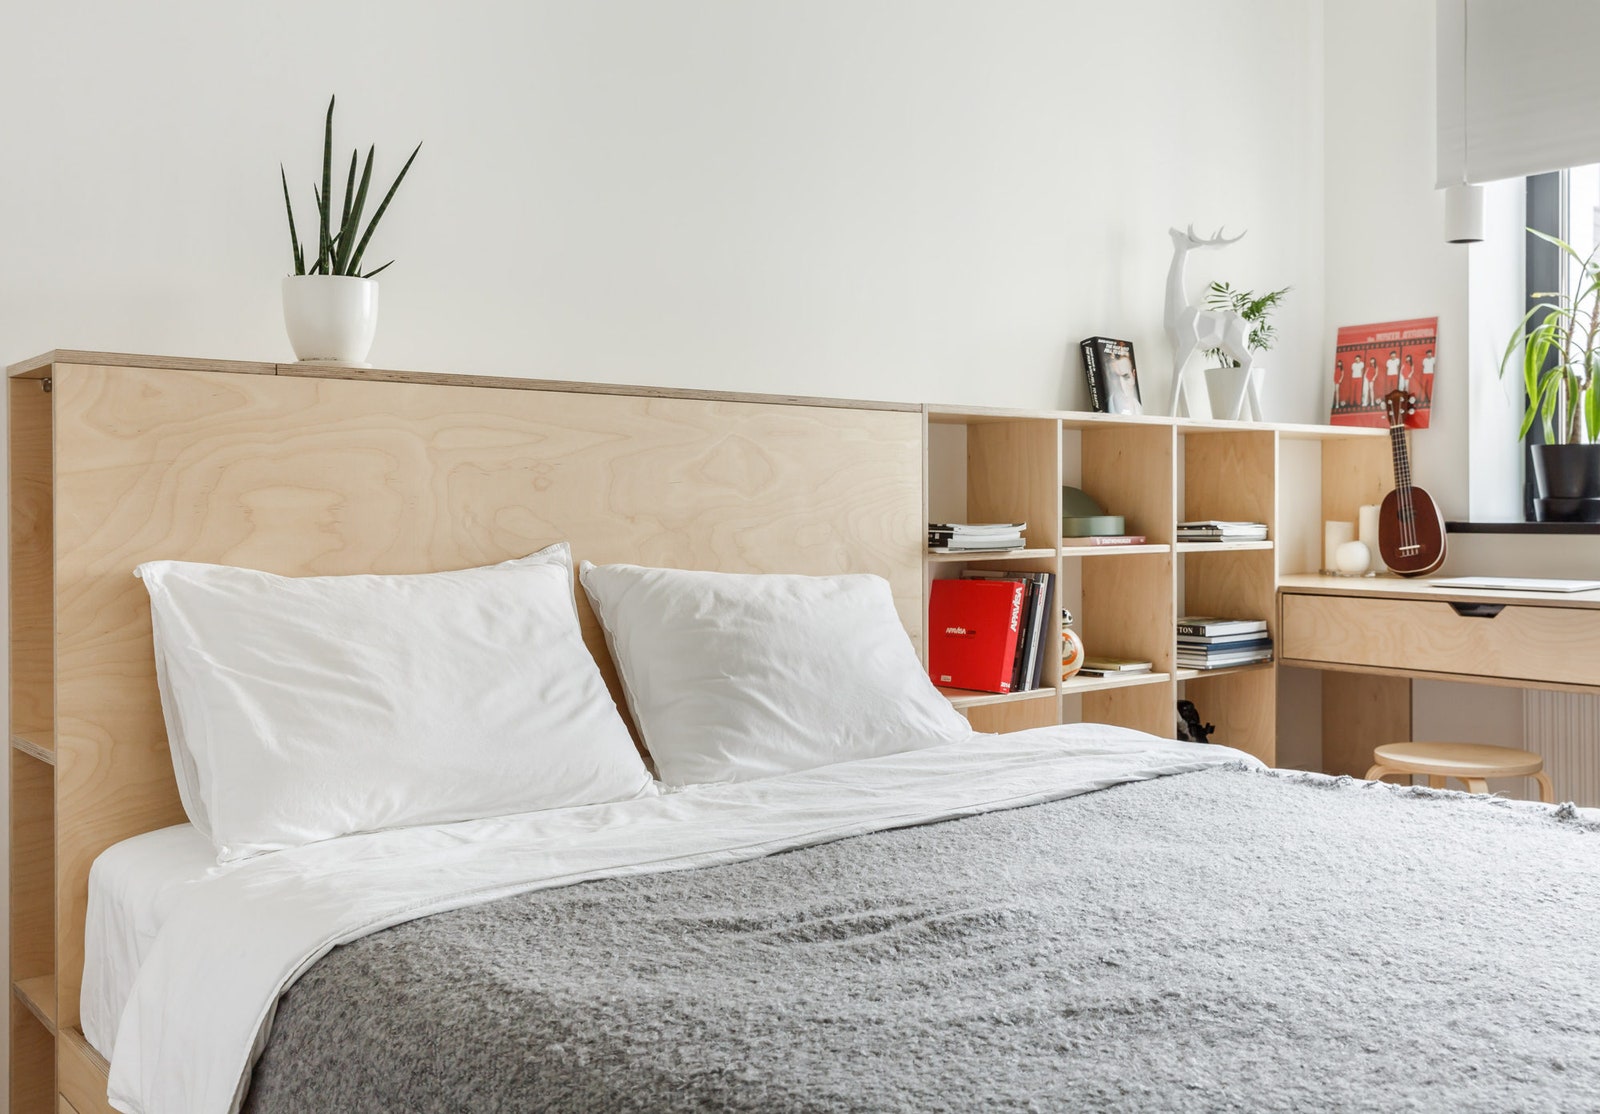 Квартира по дизайну Room Design Buro. Изголовье кровати одновременно является полкой на которую можно положить книгу или...